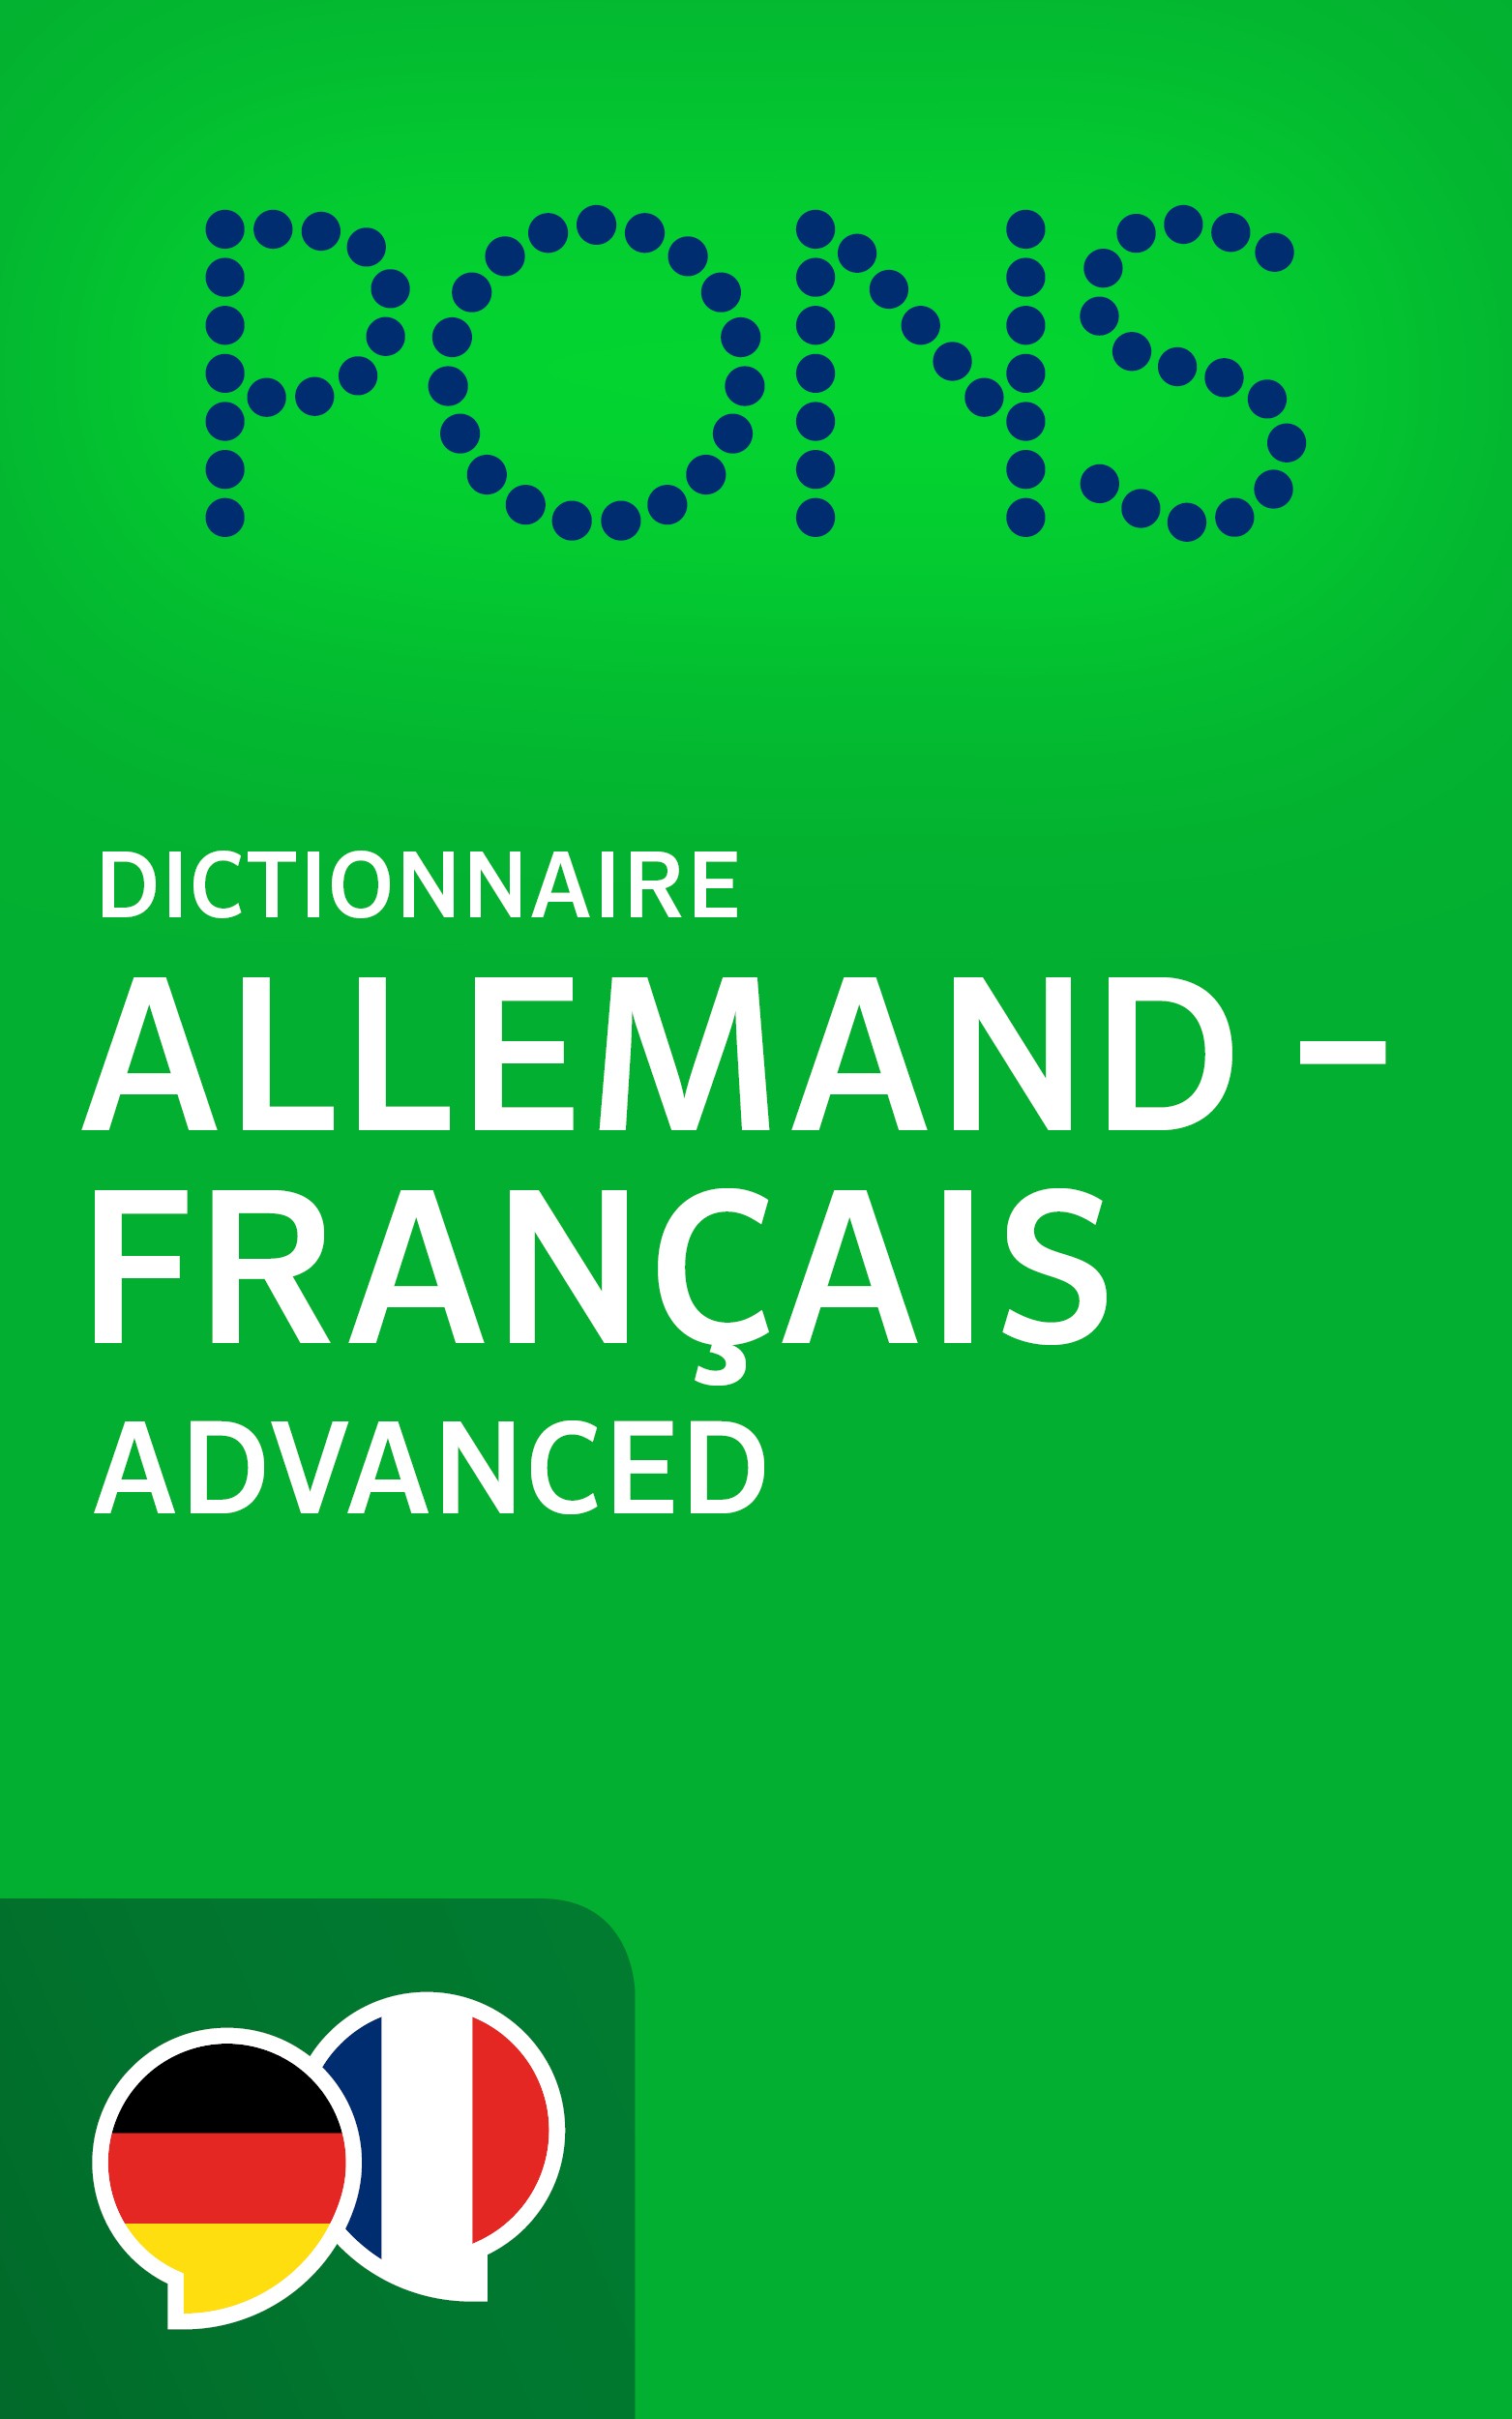 E-Book: PONS Dictionnaire Allemand -> Français Advanced